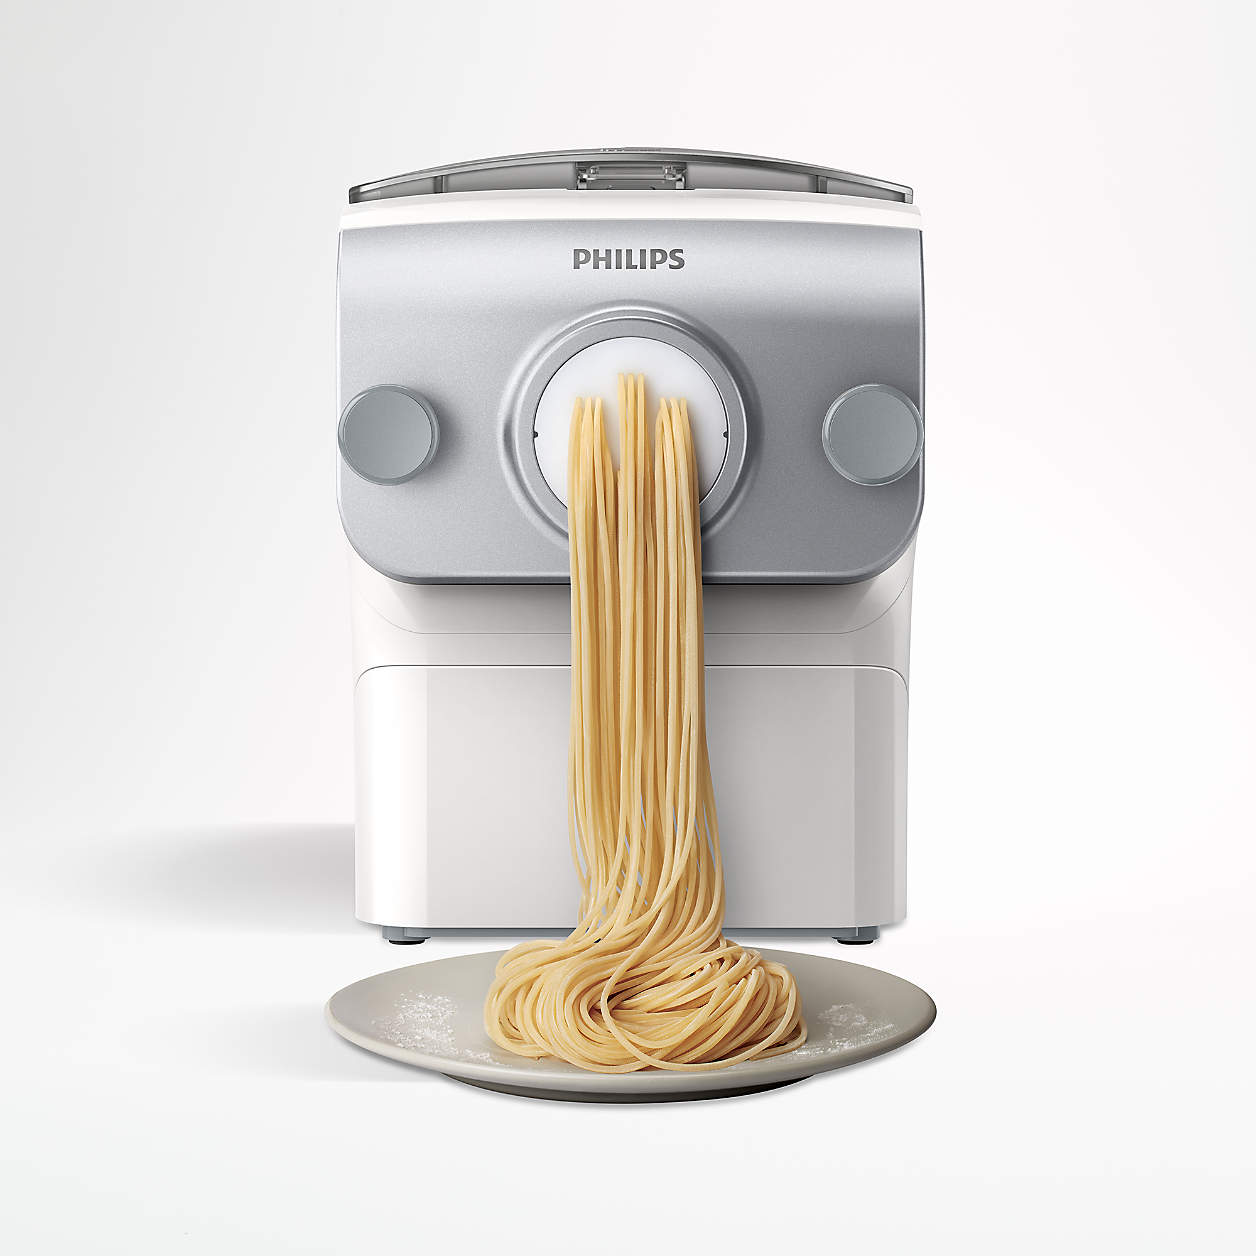 philips-pasta-machine.jpg